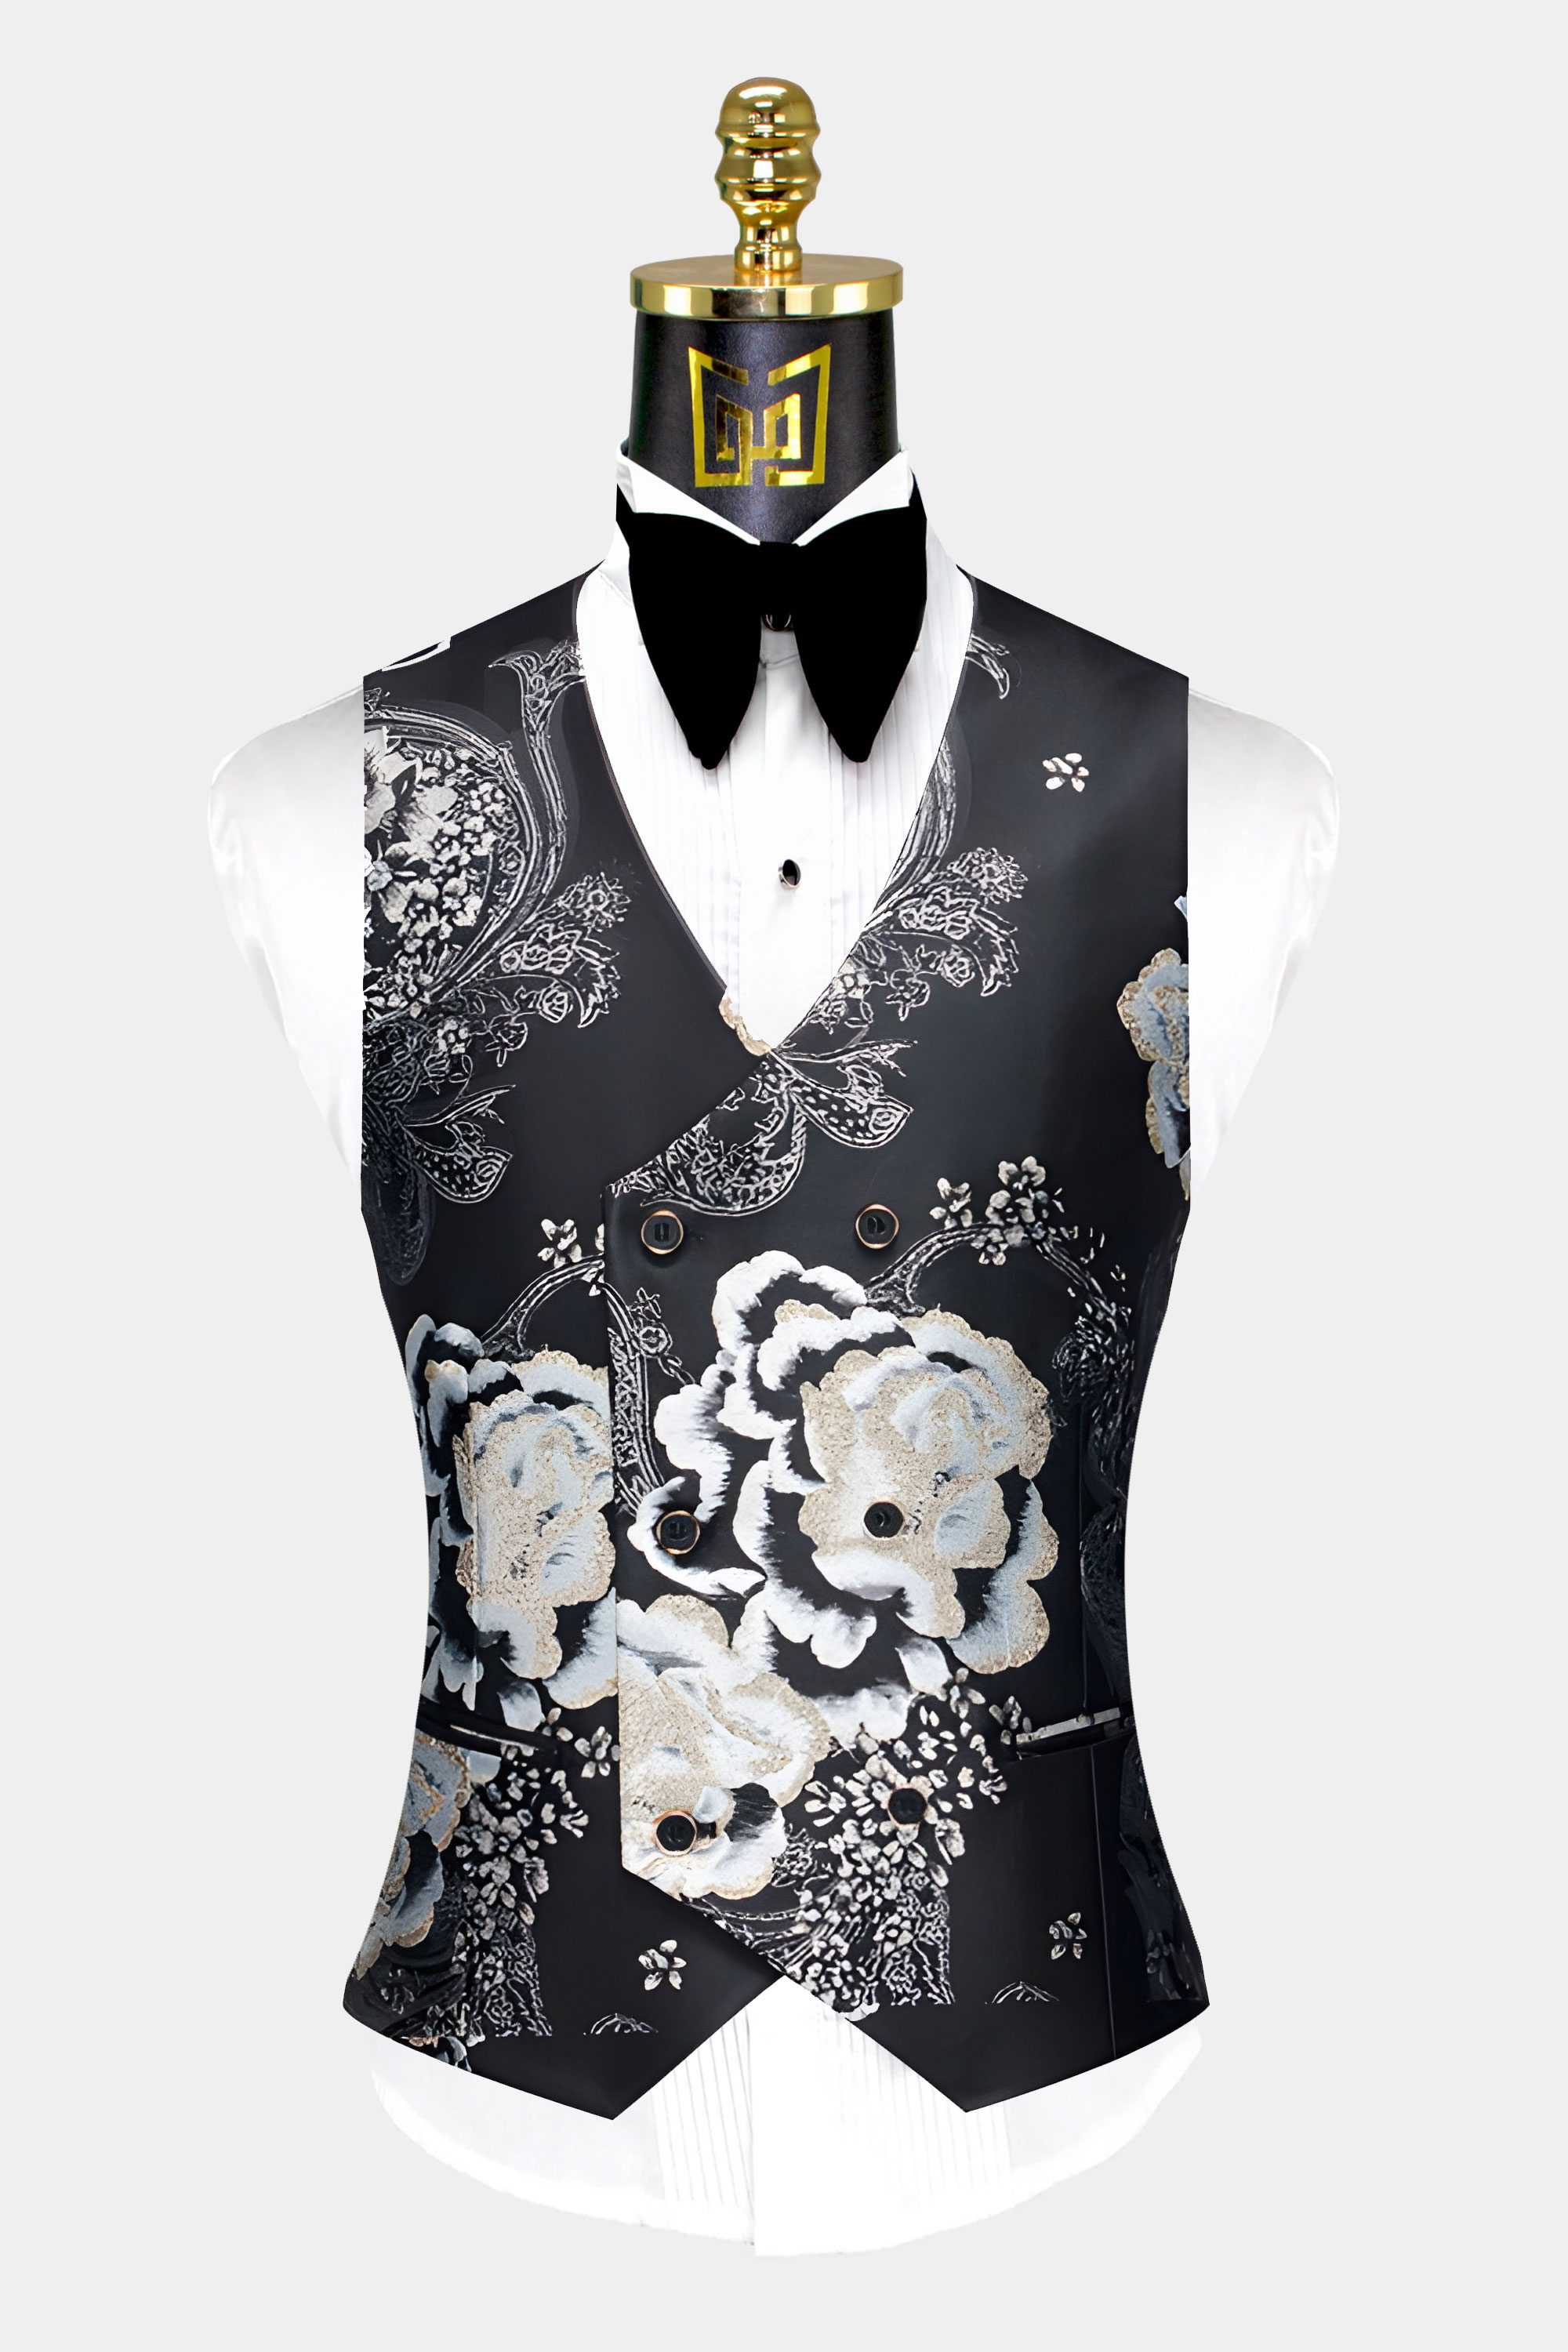 Silver-Black-Suit-Vest-Groomsmen-Wedding-WAistcoat-from-Gentlemansguru.com